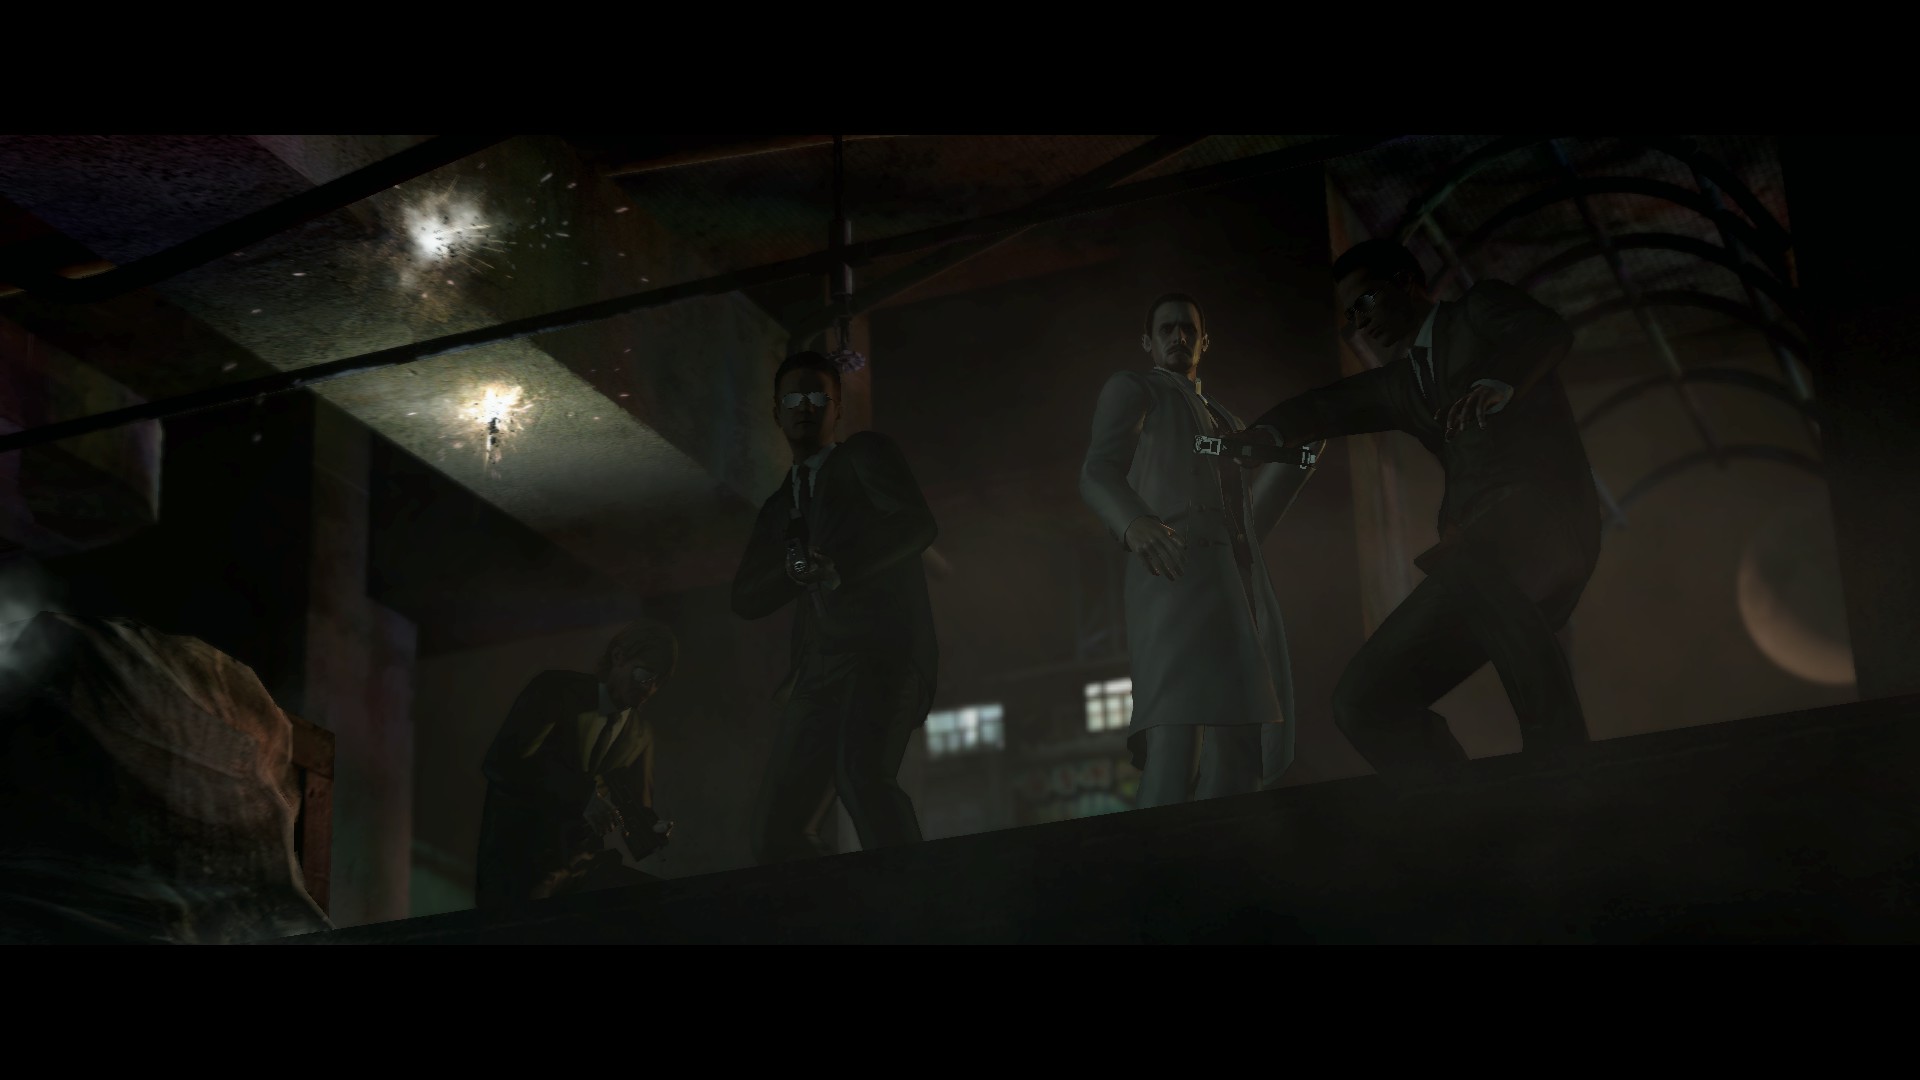 Download mobile wallpaper Resident Evil 6, Resident Evil, Video Game for free.